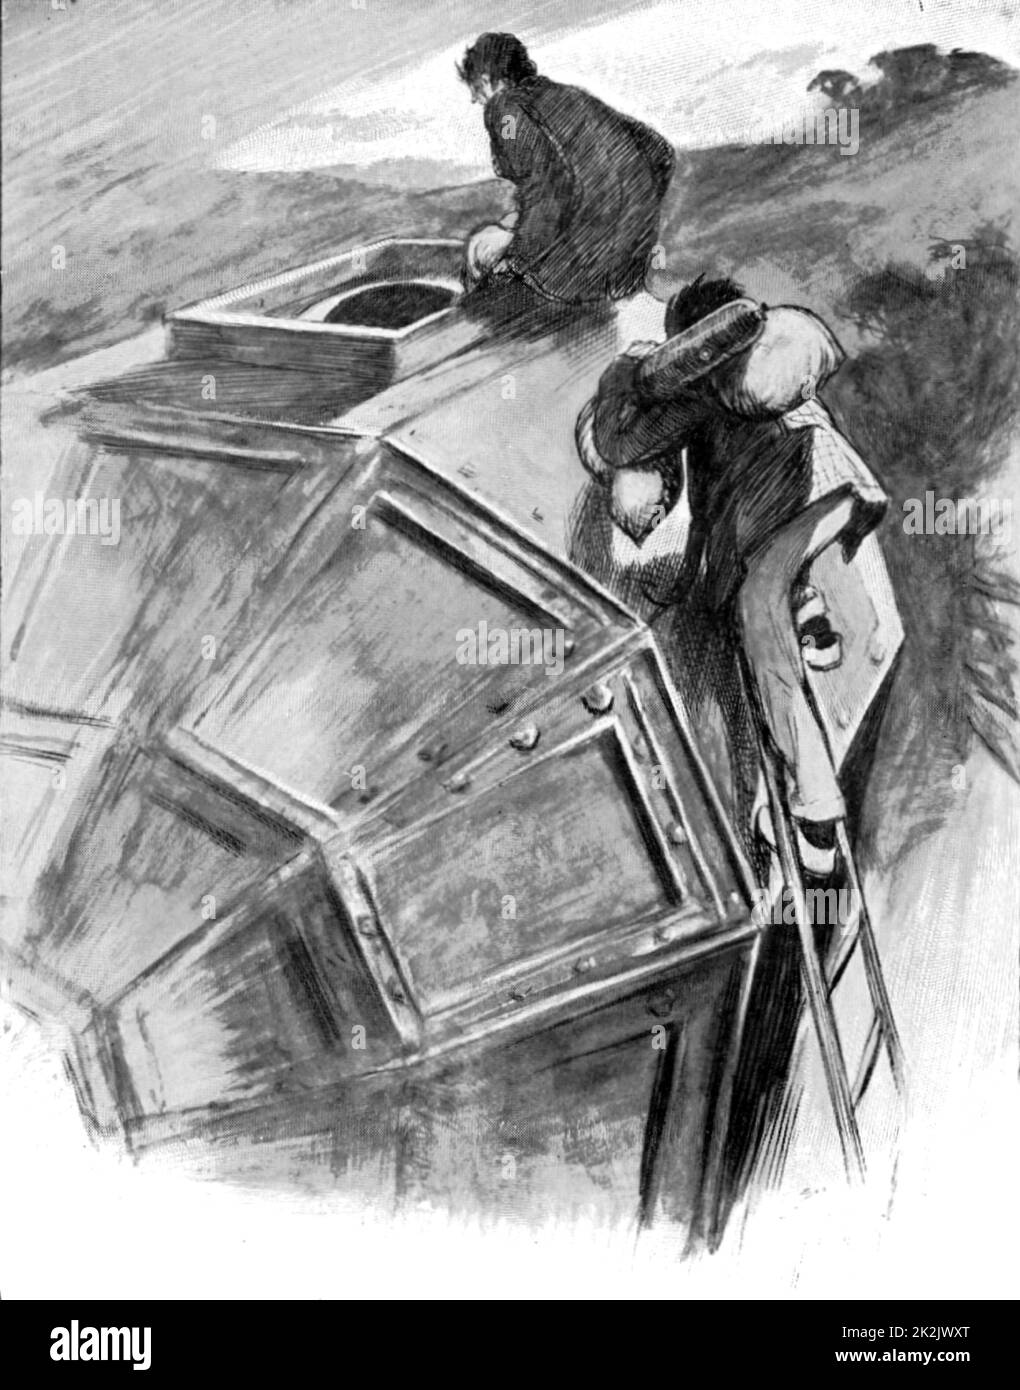 Bedford, von Cavour ermutigt, in Ihrem Raumschiff auf den Weg zum Mond. Abbildung von HG Wells' Die ersten Menschen auf dem Mond", zuerst veröffentlicht London, 1913. Halbton. Stockfoto